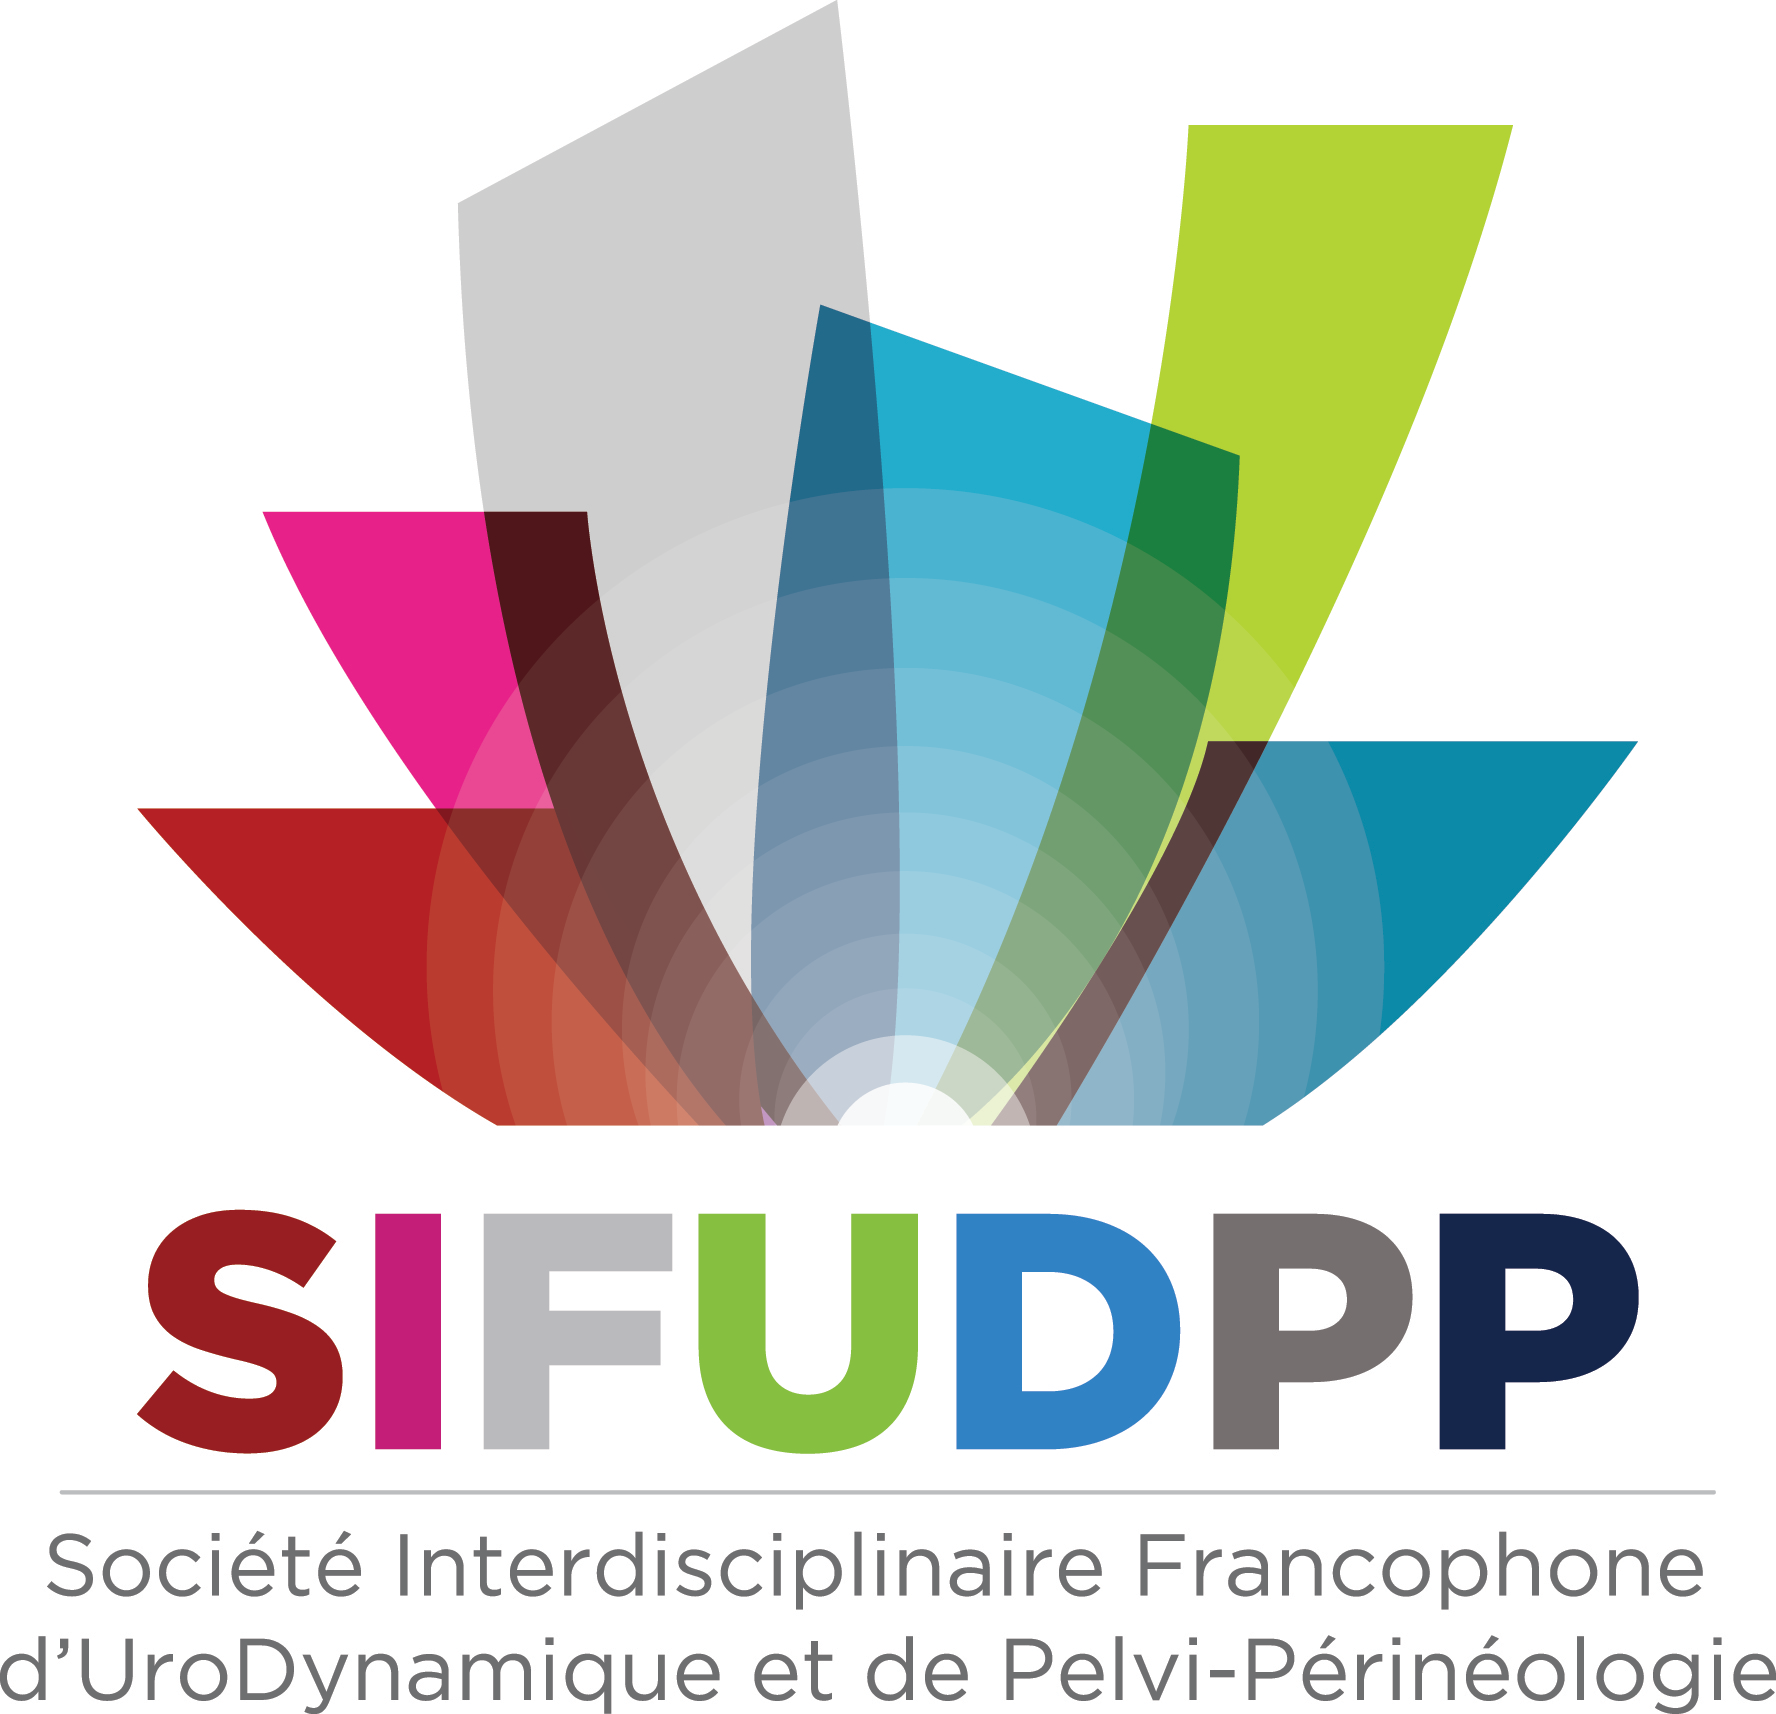 SIFUD-PP Paris 2016 : Y-a-t-il des précautions particulières en cas d’abus sexuels ?